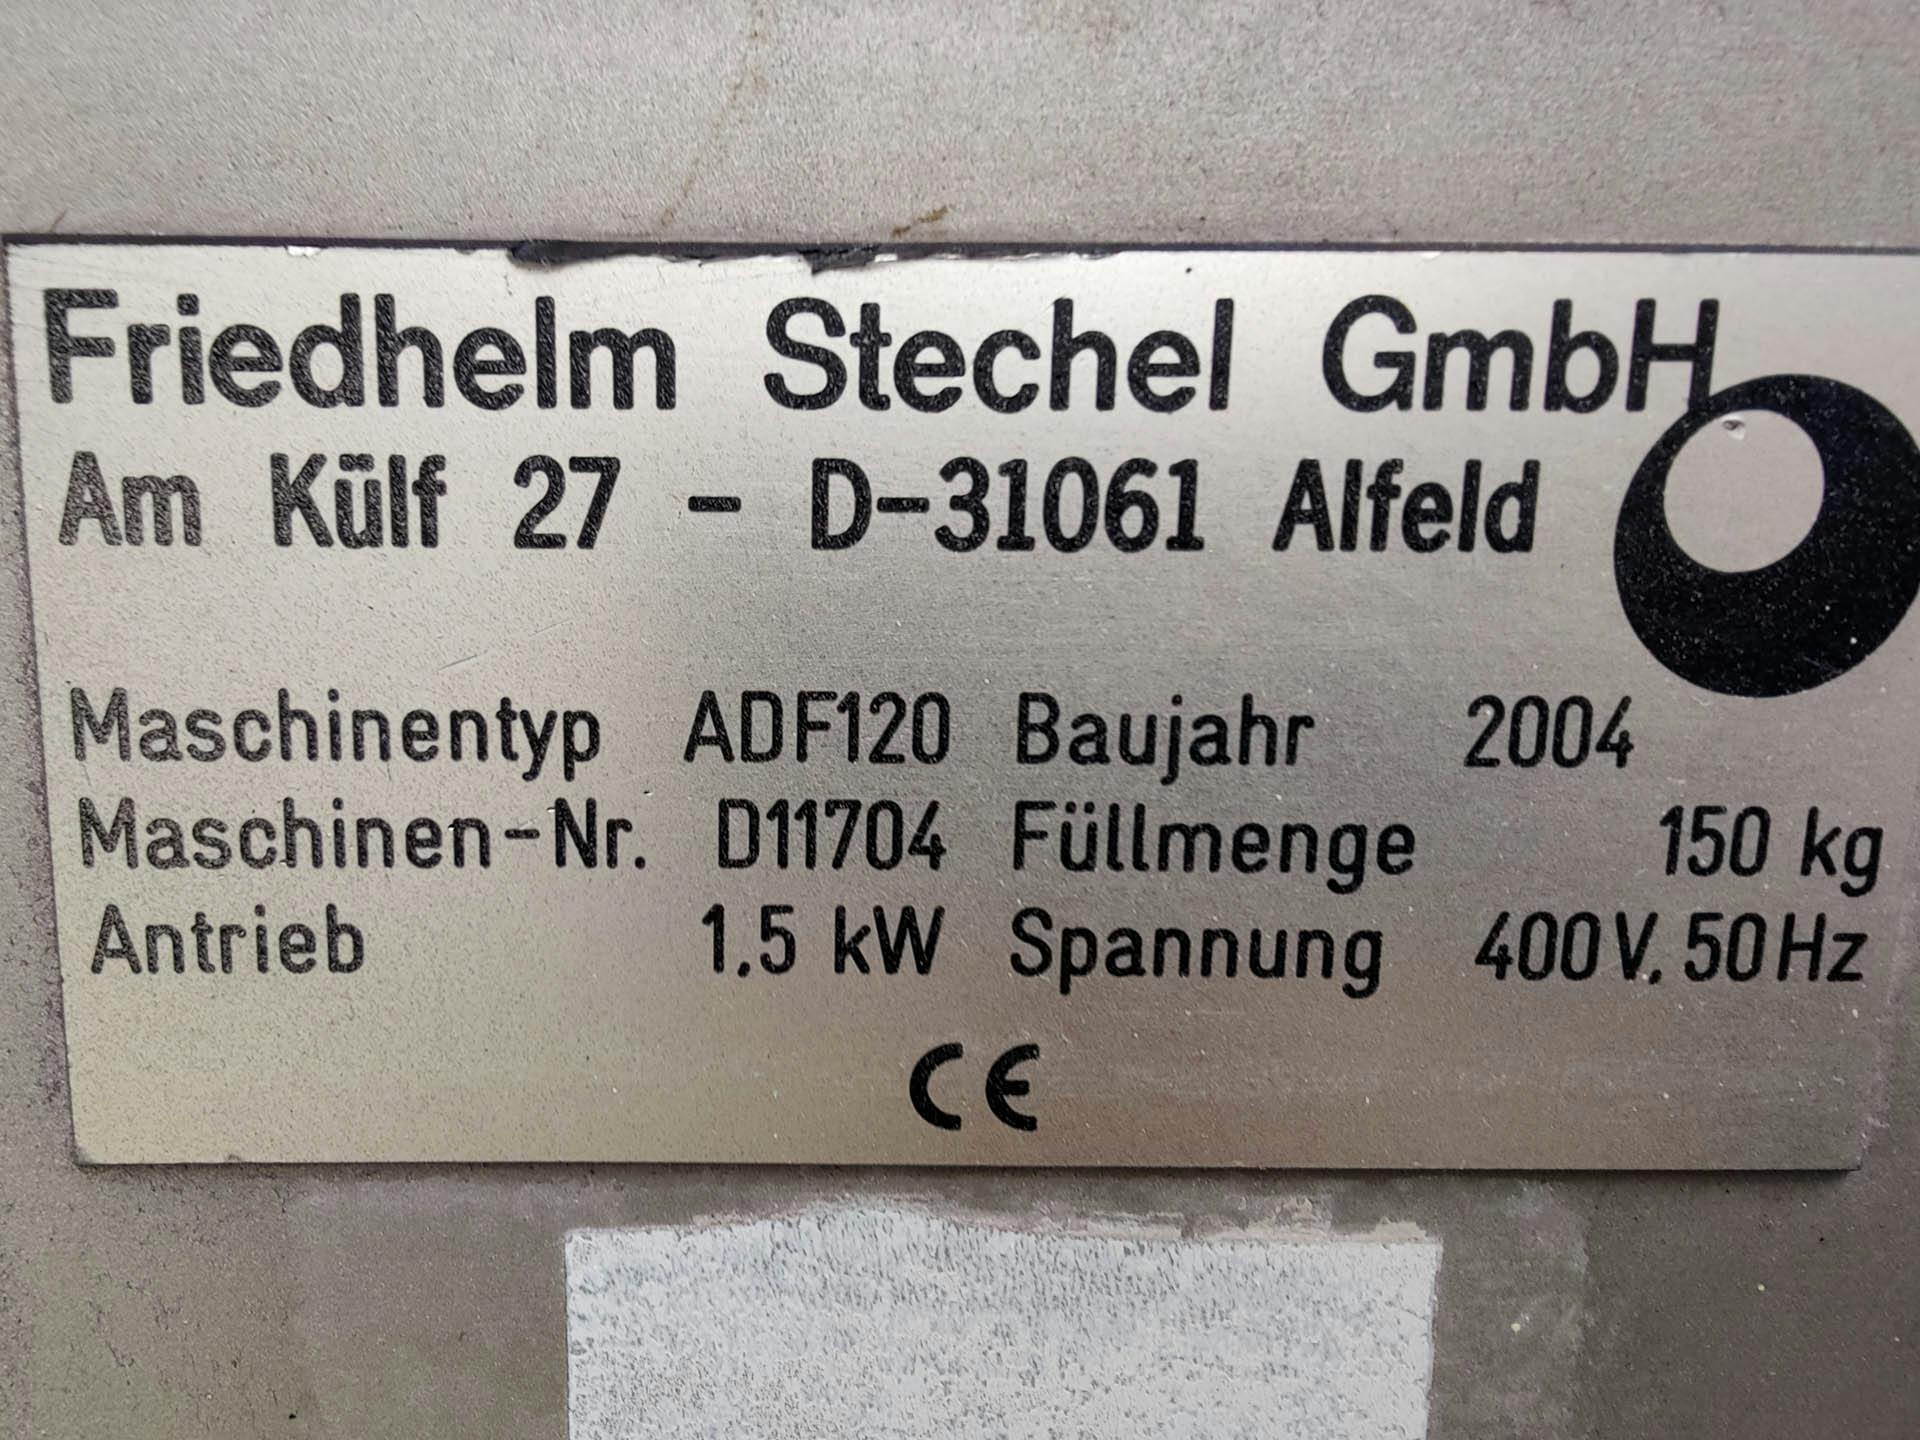 Friedhelm Stechel ADF-120 - Bandeja de revestimento - image 8